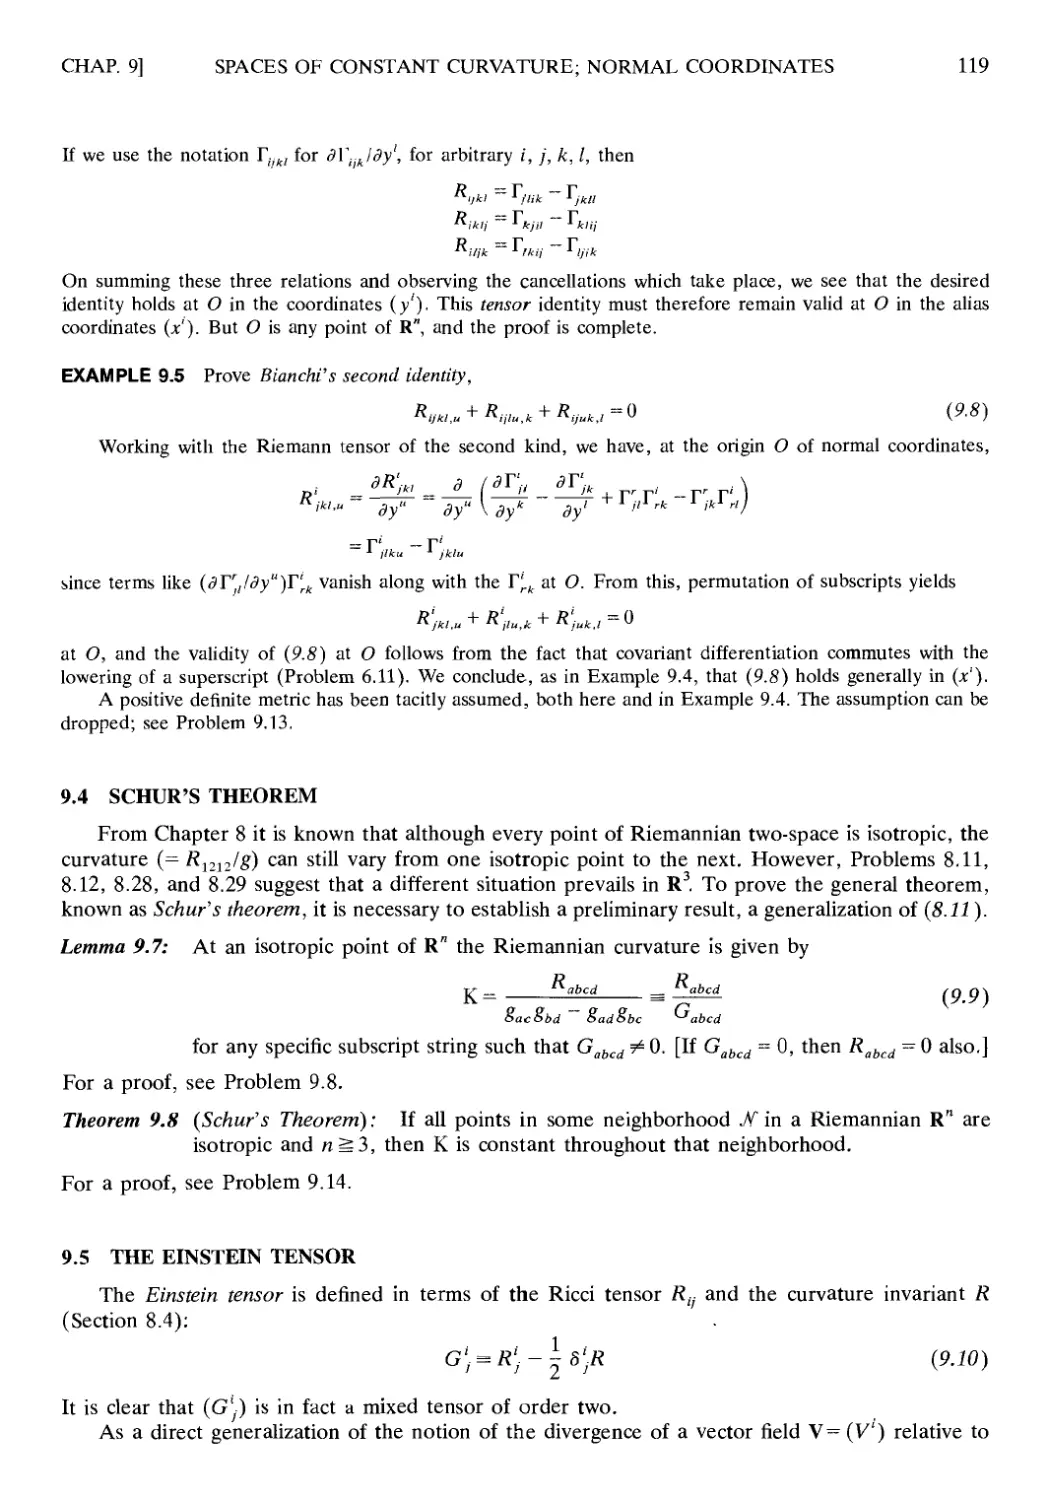 9.4 Schur's Theorem
9.5 The Einstein Tensor